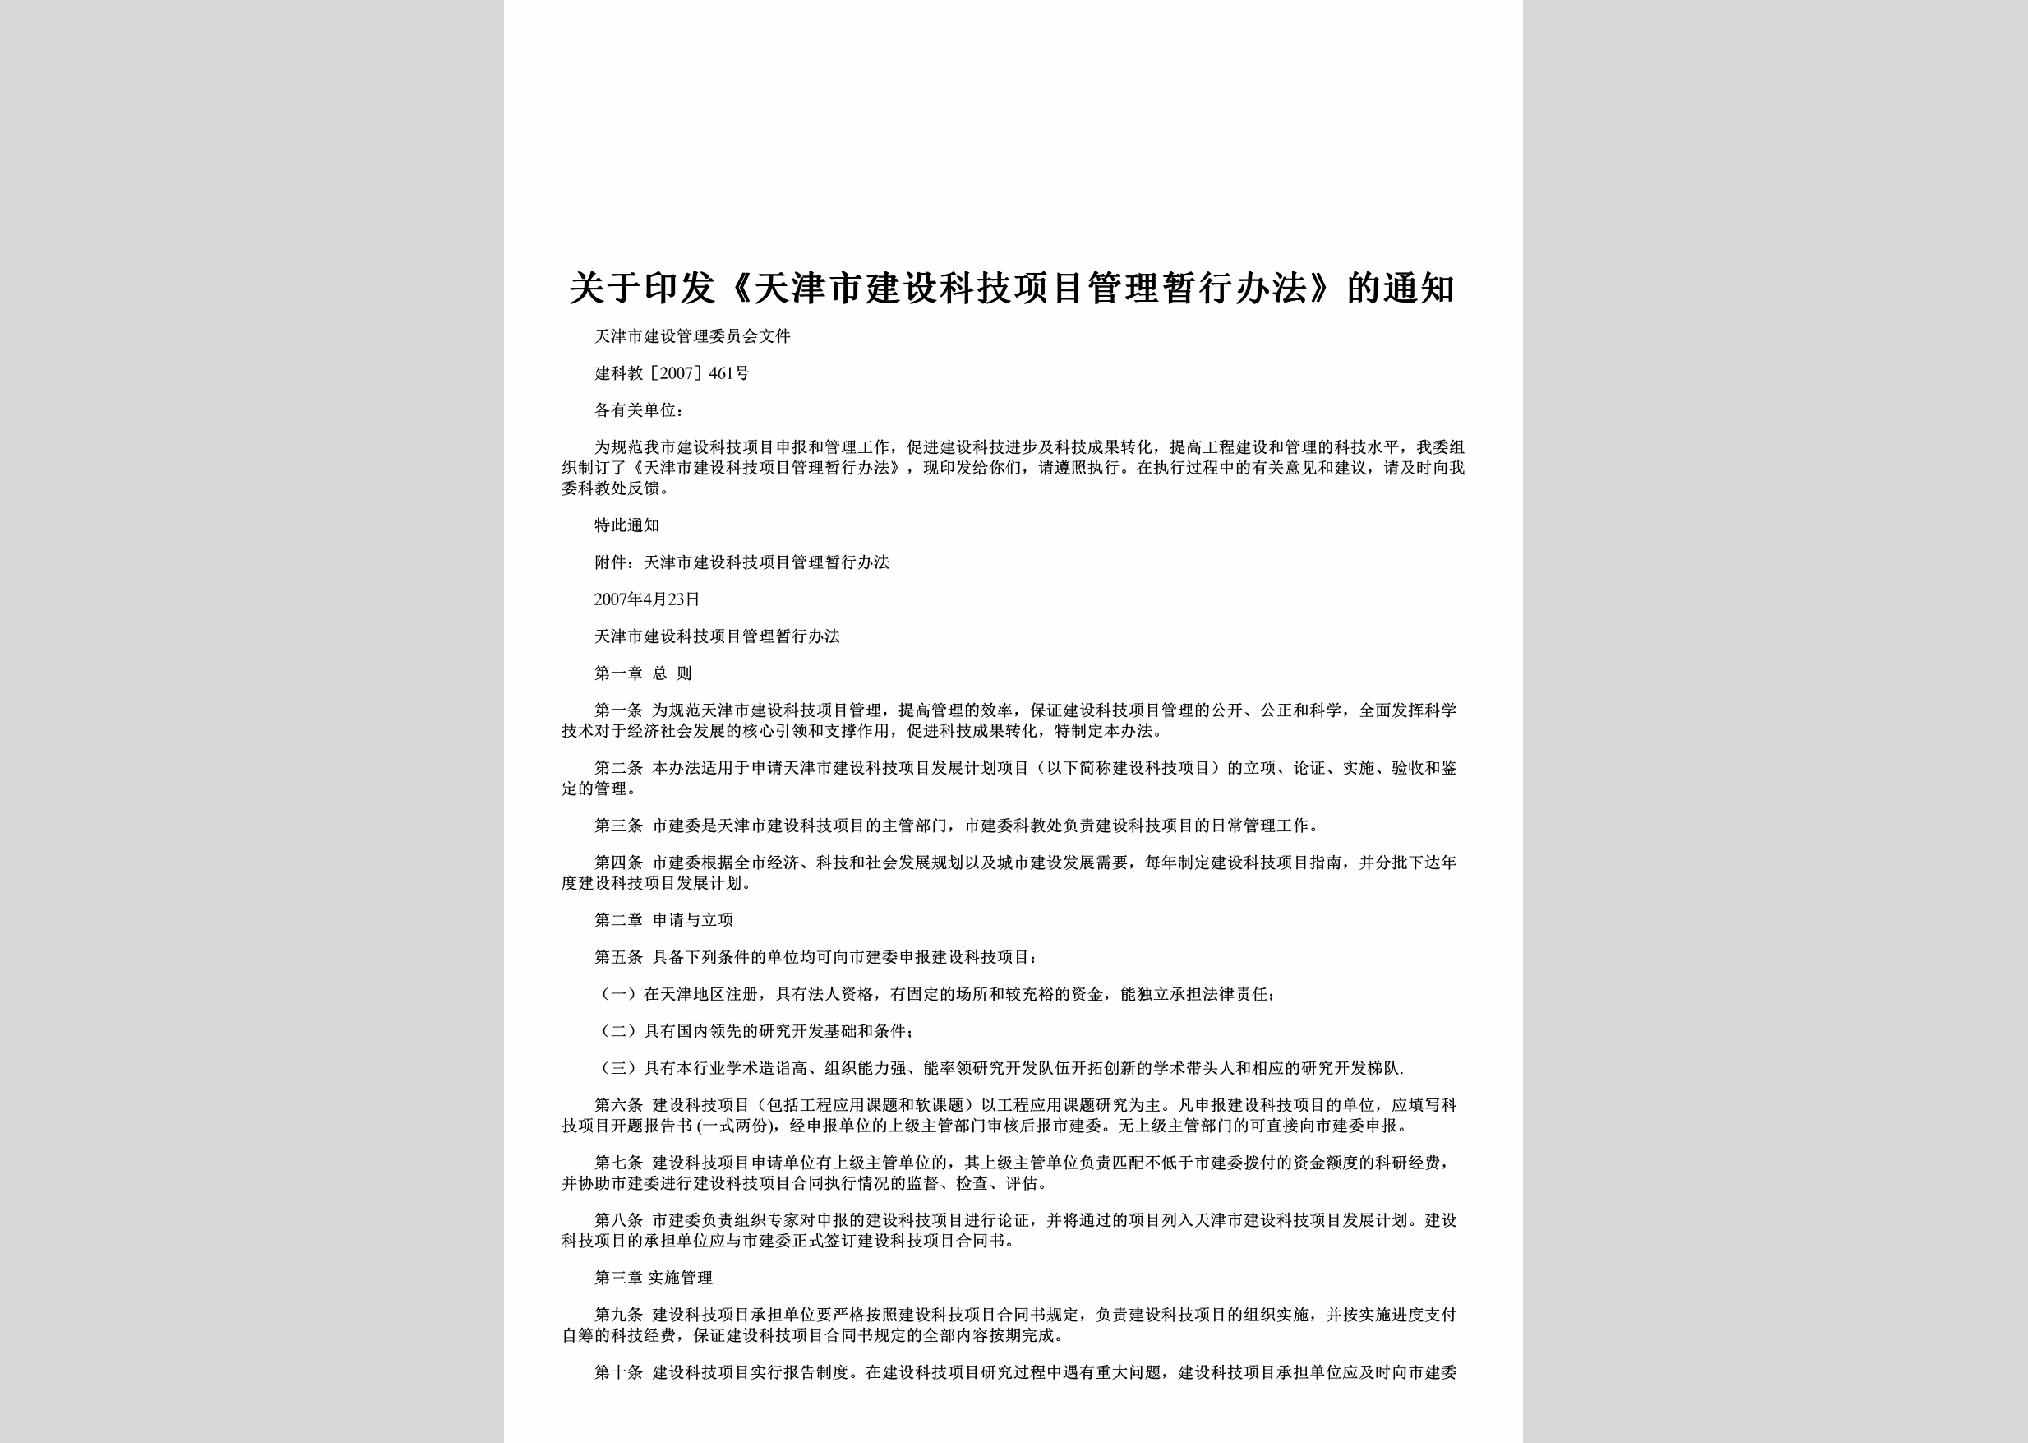 建科教[2007]461号：关于印发《天津市建设科技项目管理暂行办法》的通知